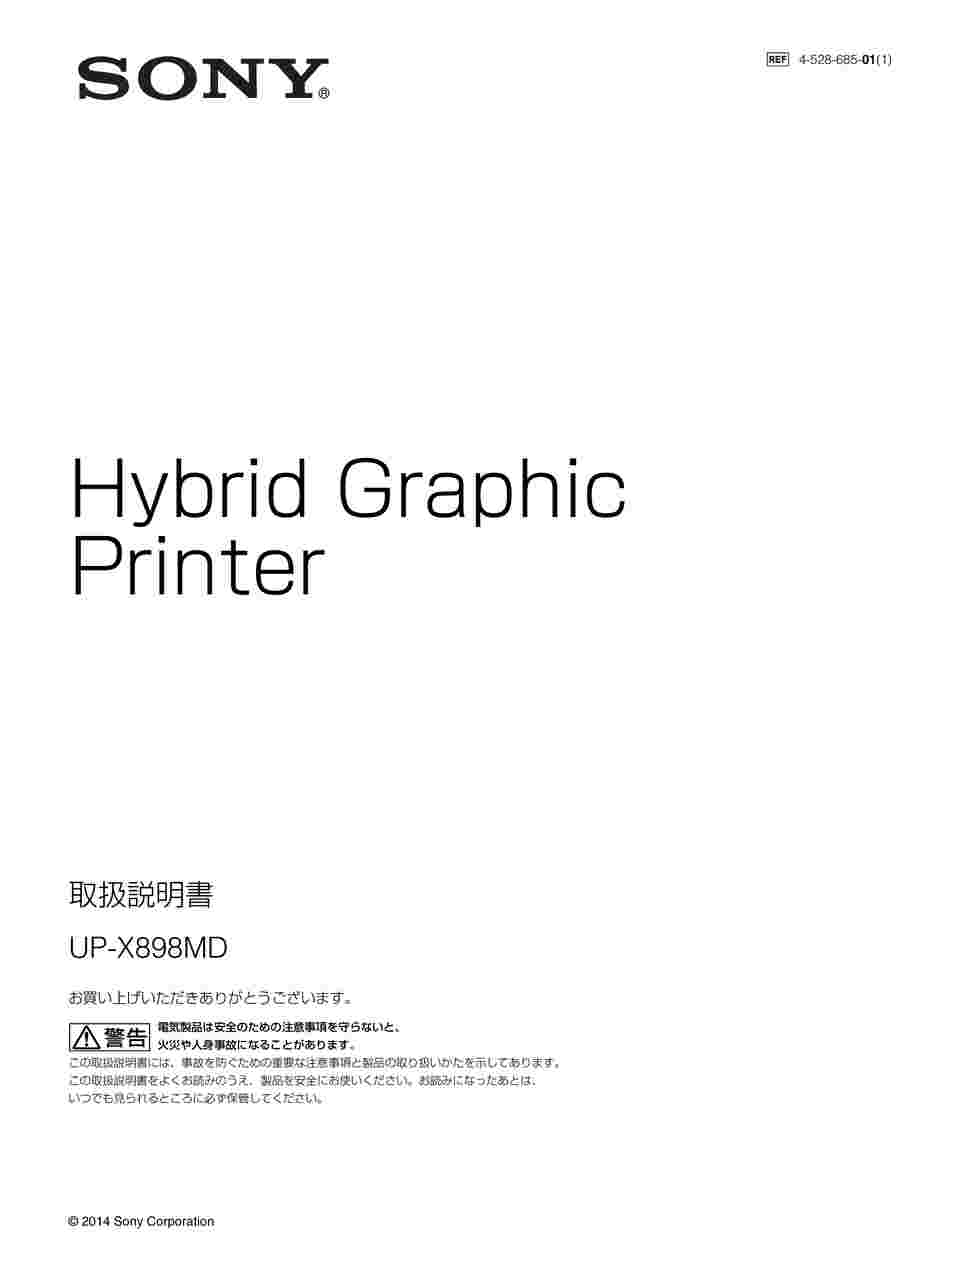 65-1837-34 ハイブリッドグラフィックプリンター UP-X898MD 【AXEL